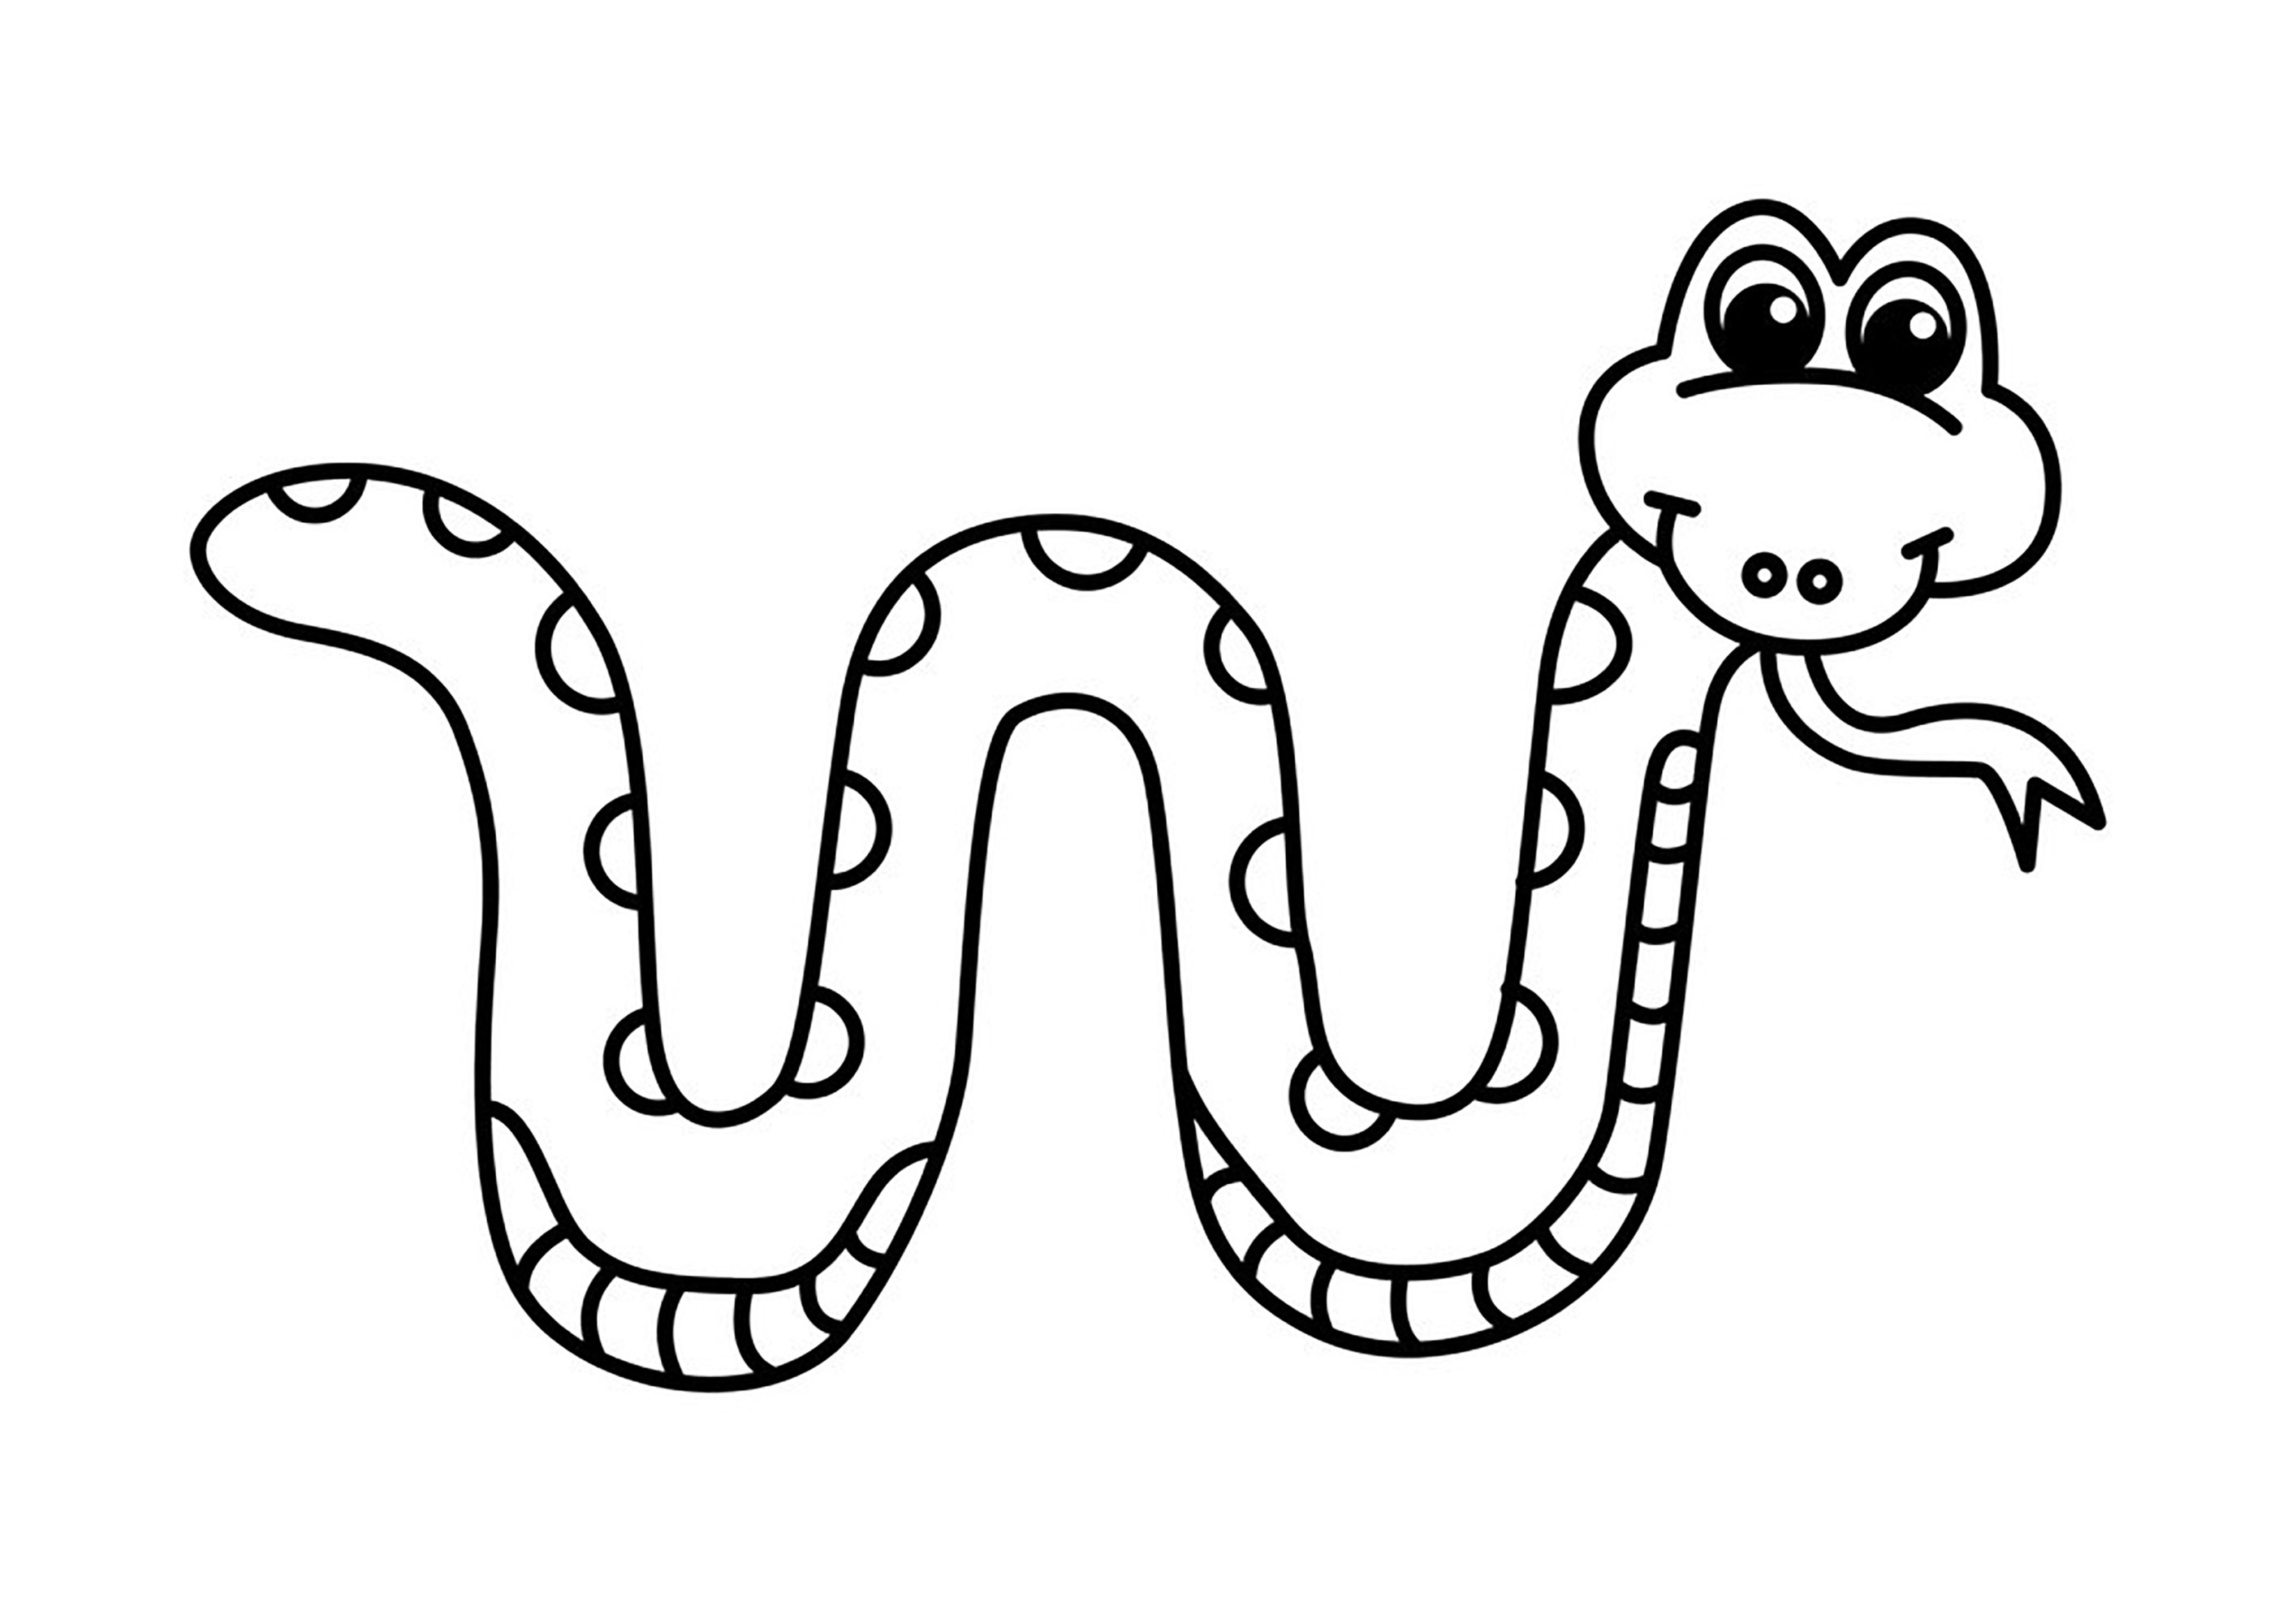 Coloreado sencillo de una serpiente sacando la lengua